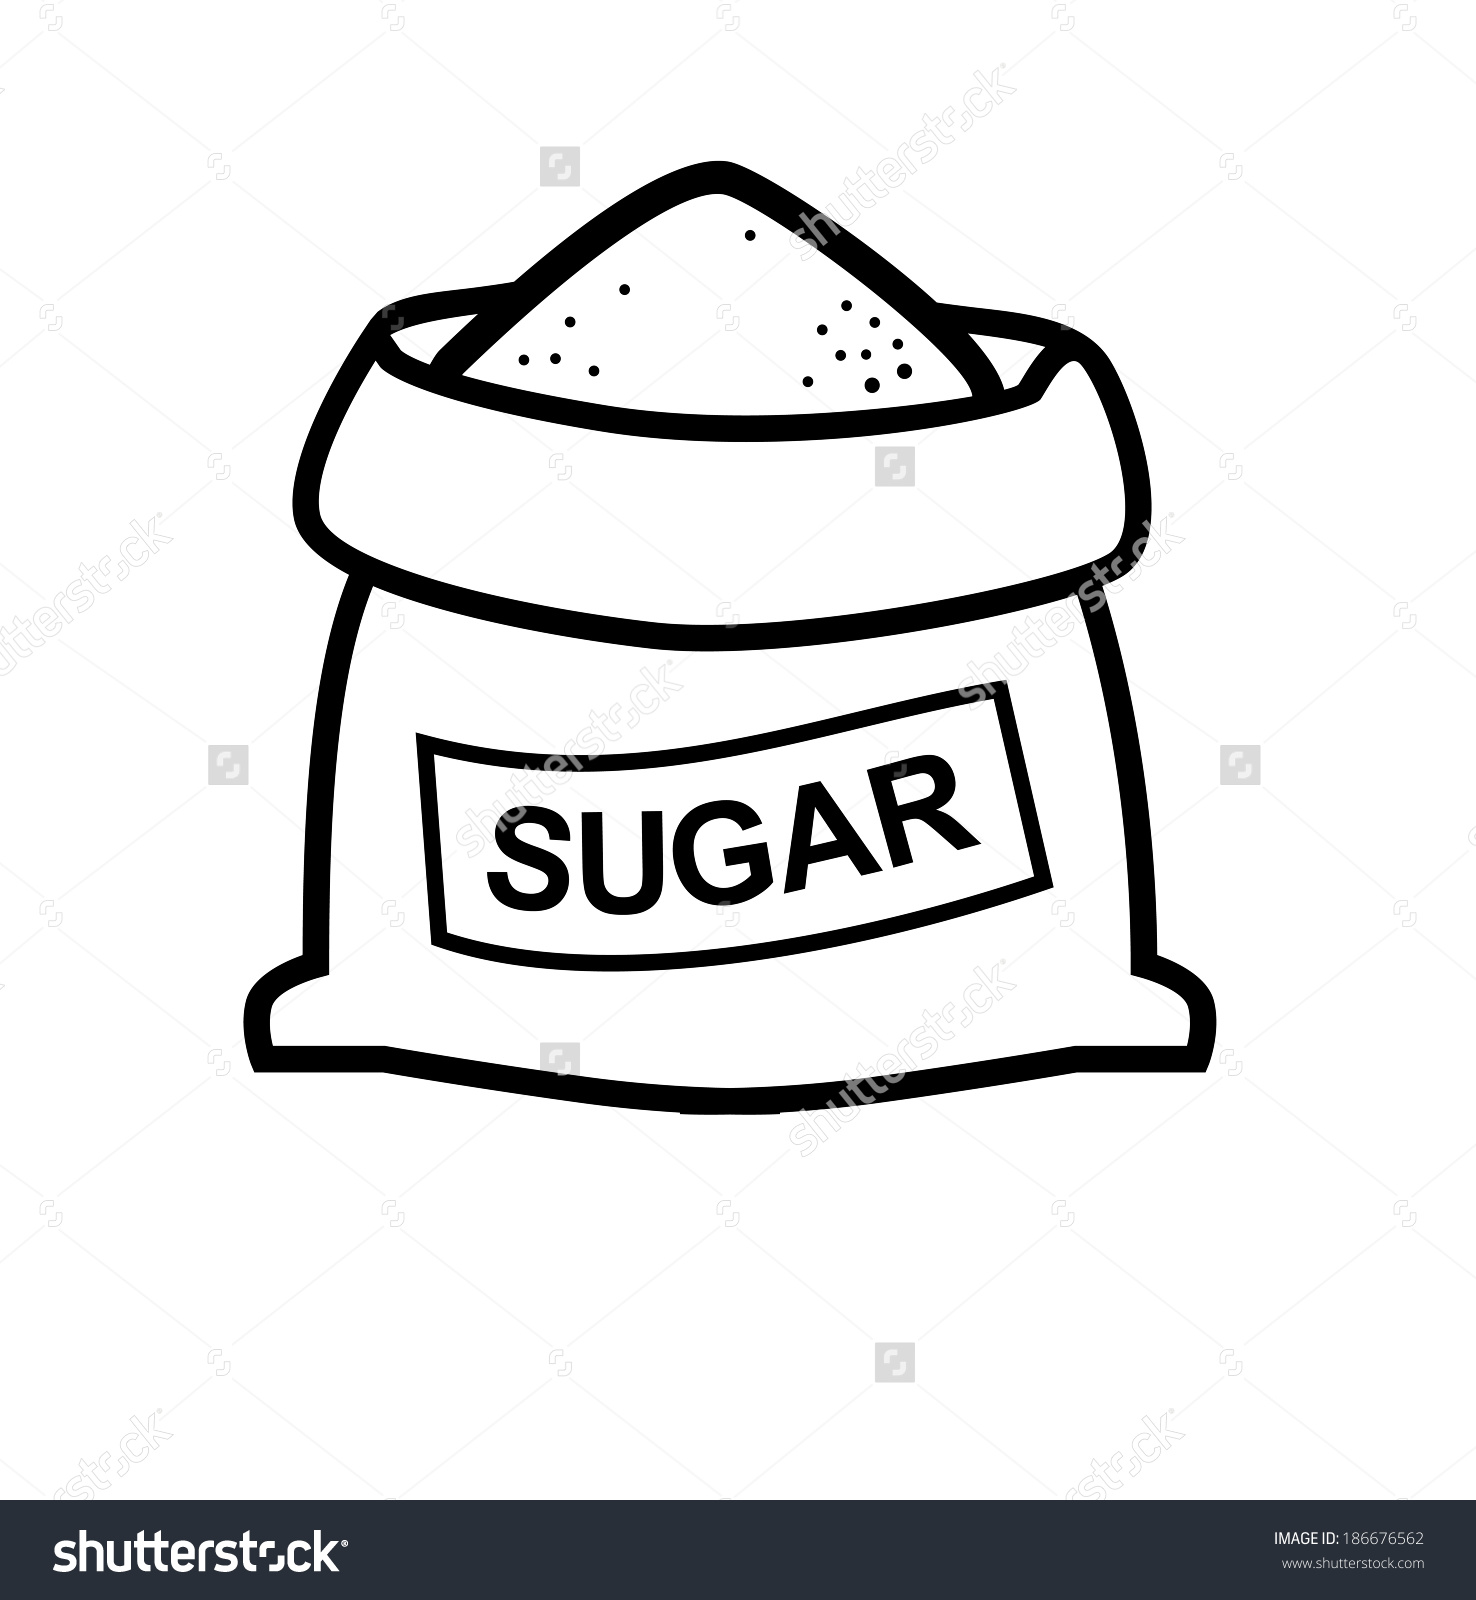 Sugar clipart black and white - ClipartFest